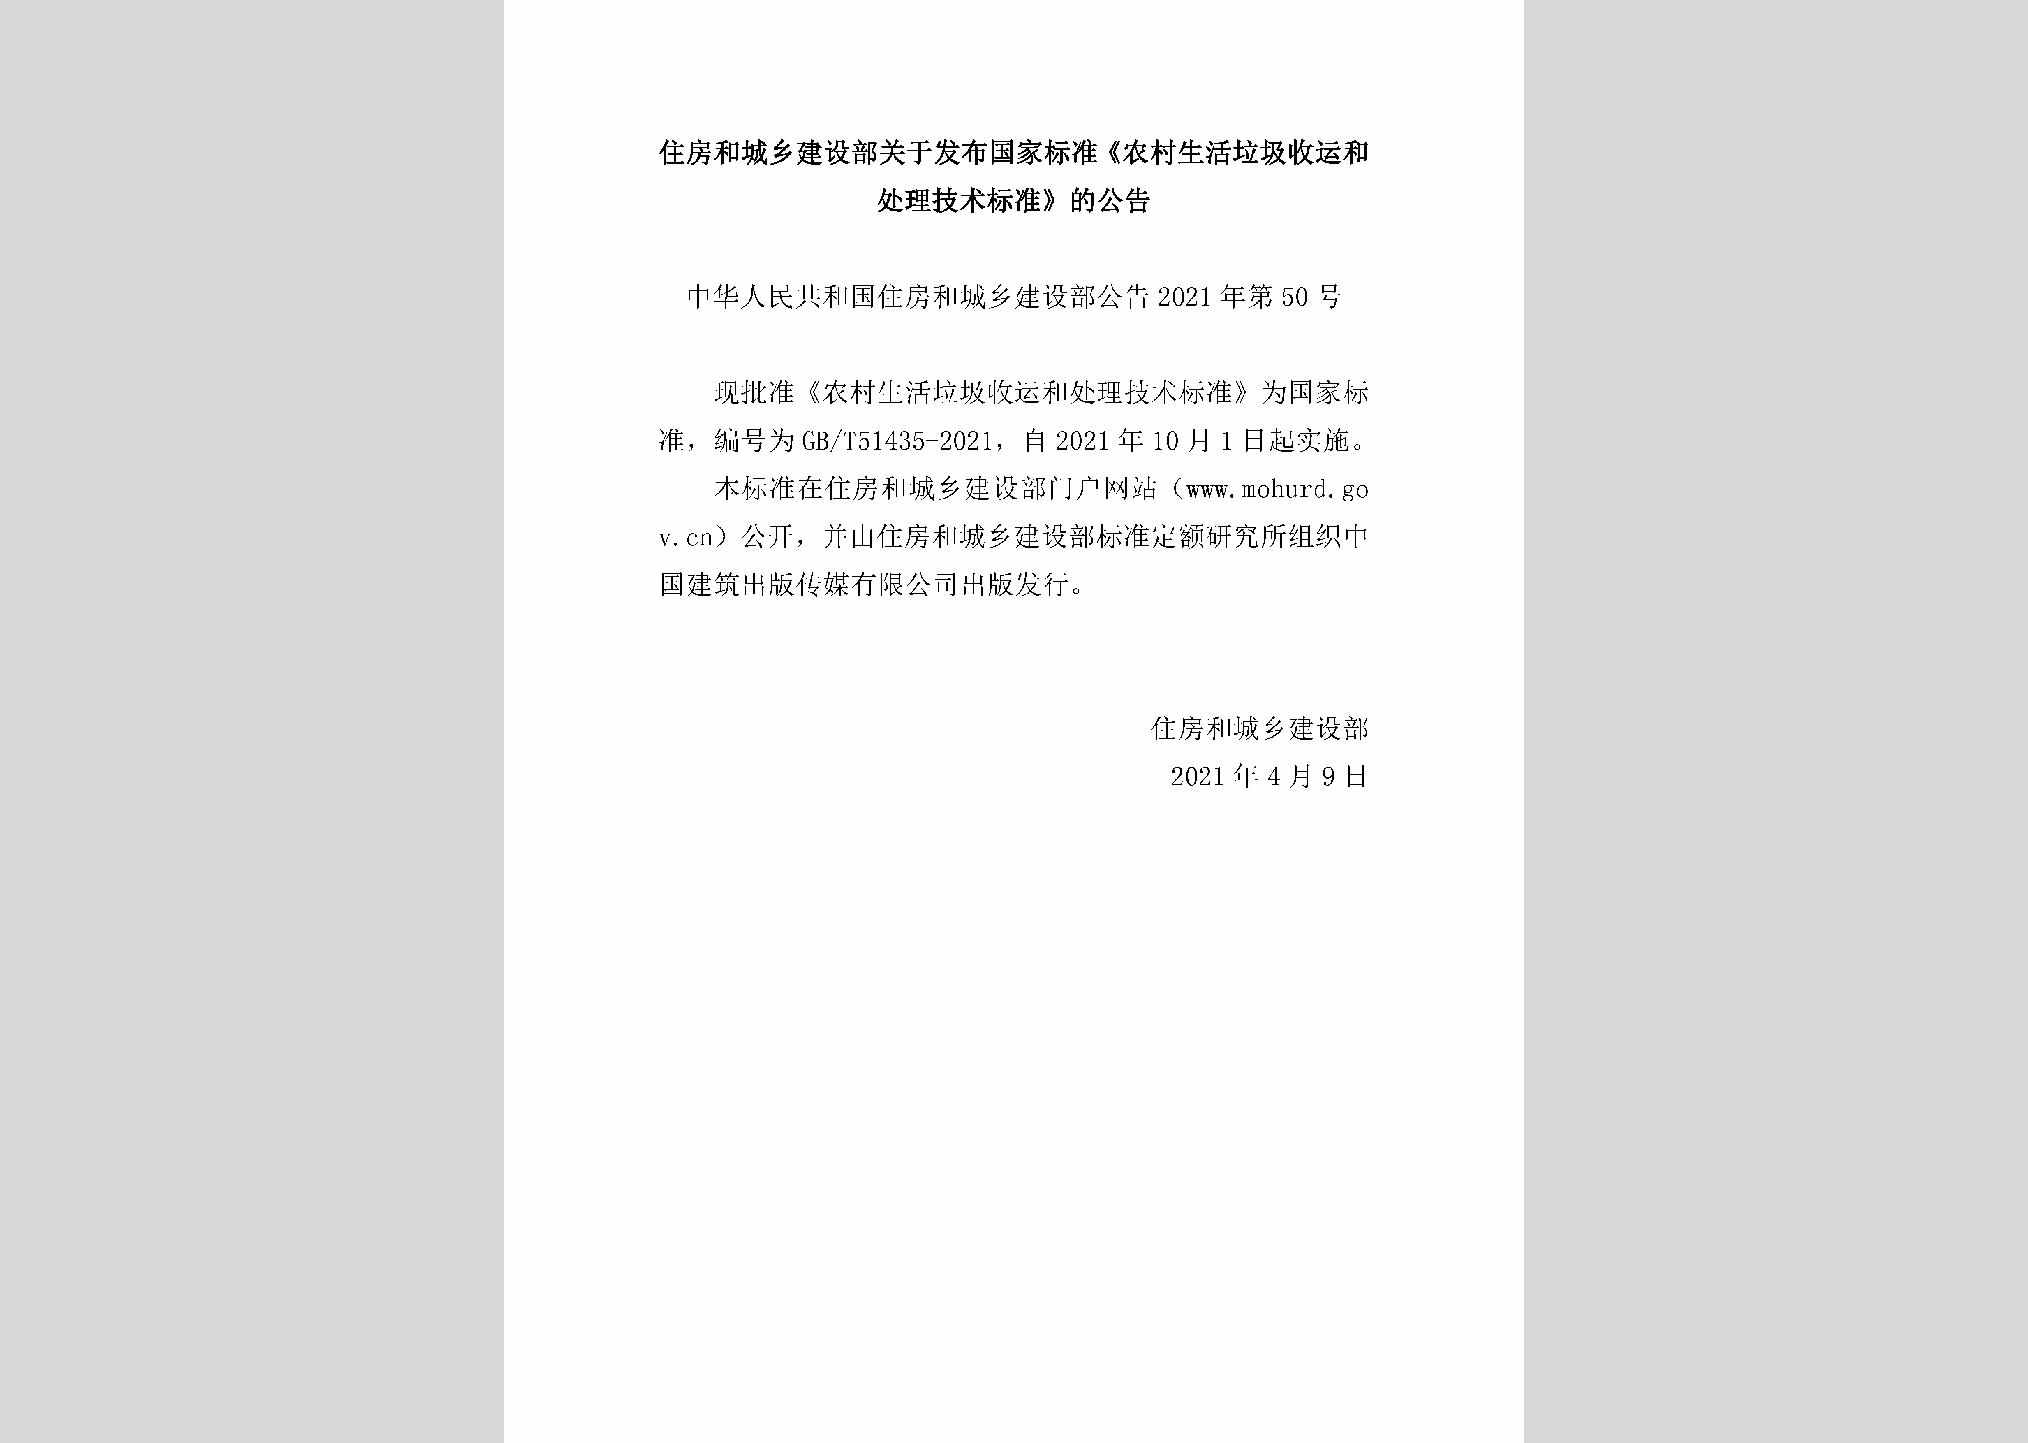 中华人民共和国住房和城乡建设部公告2021年第50号：住房和城乡建设部关于发布国家标准《农村生活垃圾收运和处理技术标准》的公告